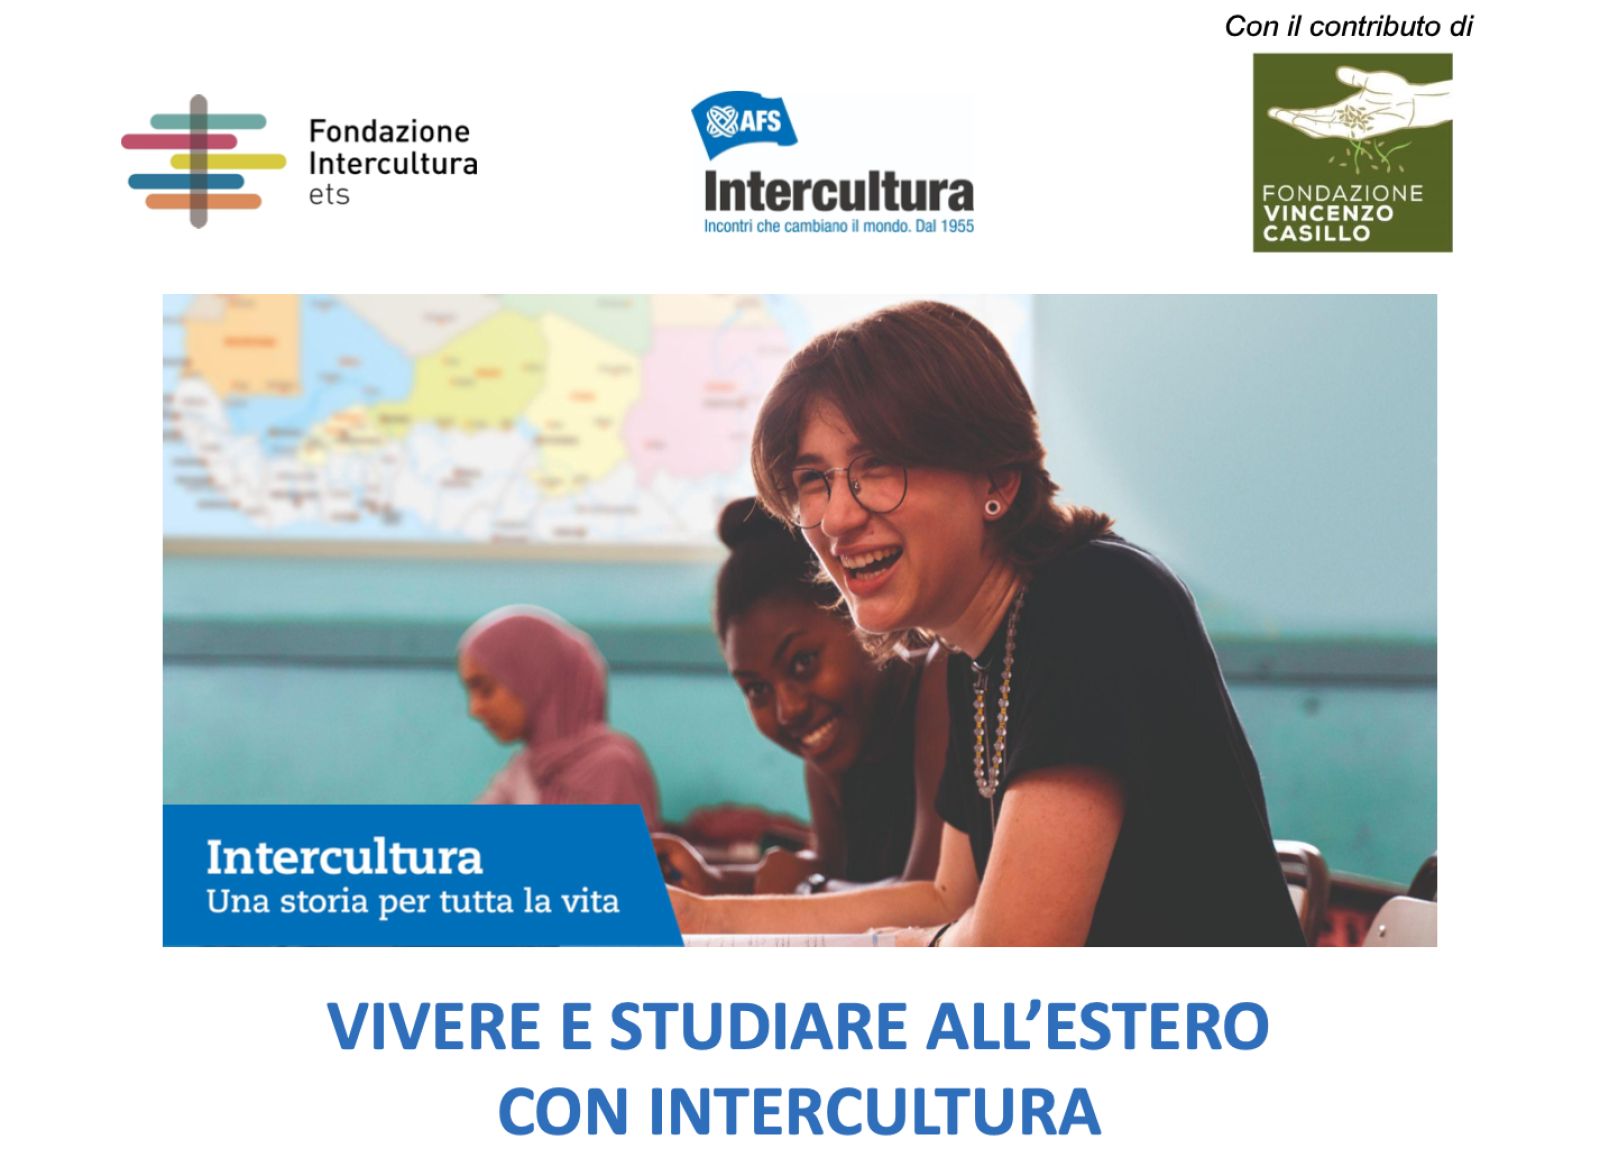 Intercultura: 3 borse di studio per un anno in Asia e America Latina